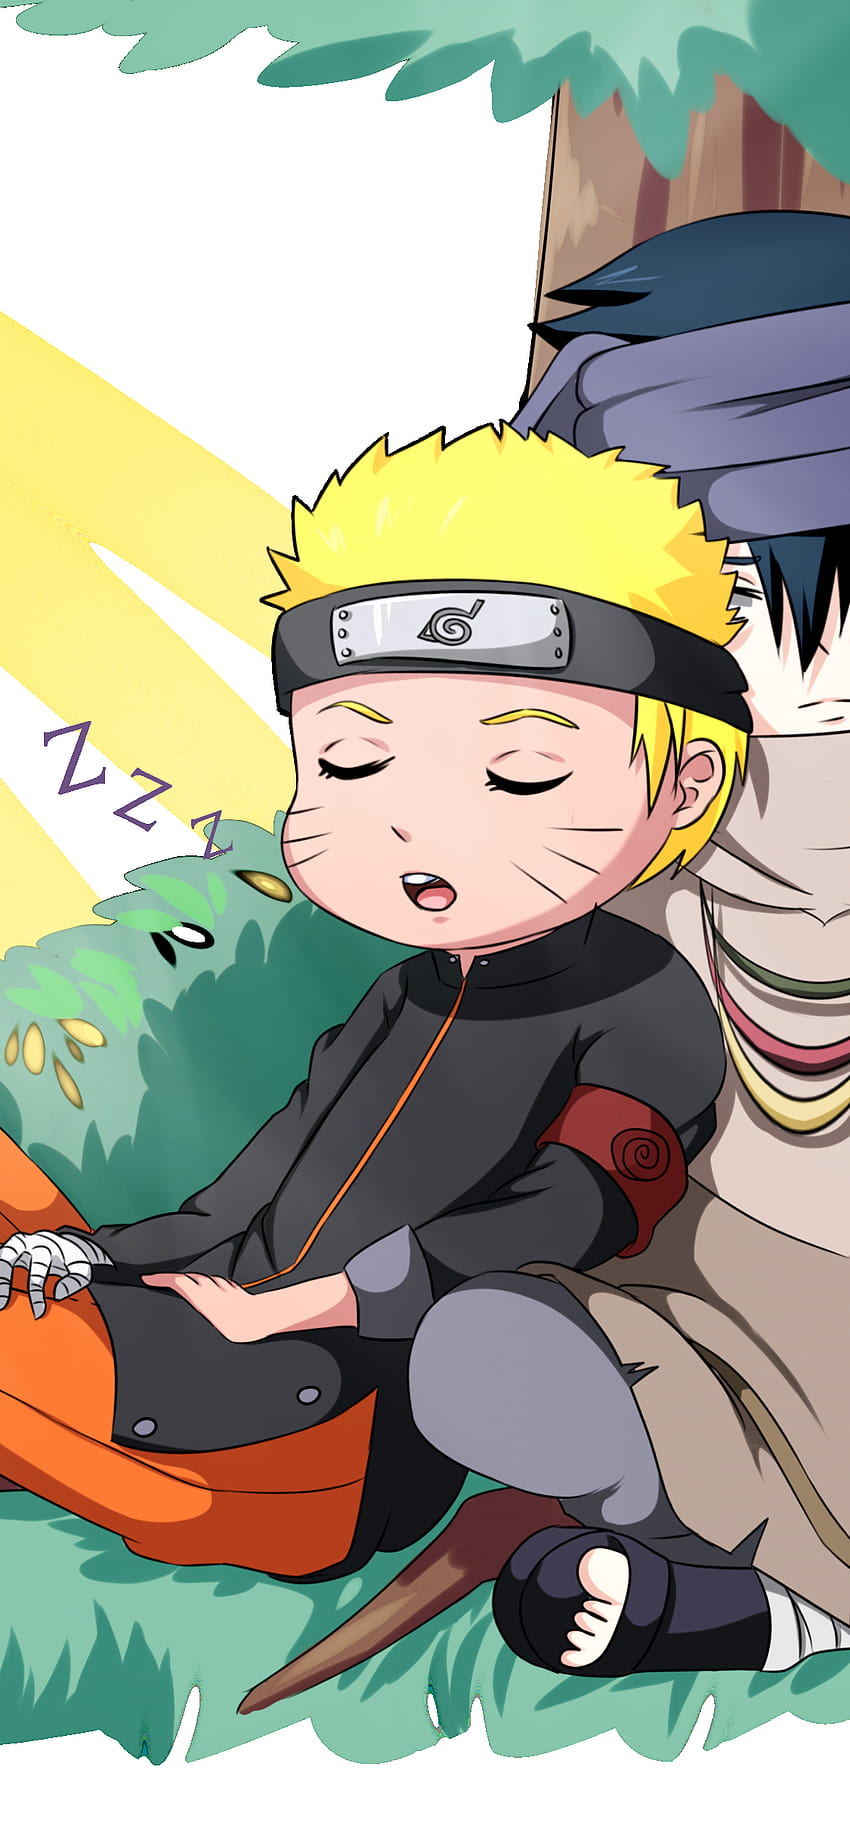 Wallpaper ID 416552  Anime Naruto Phone Wallpaper Sasuke Uchiha Naruto  Uzumaki 1080x1920 free download